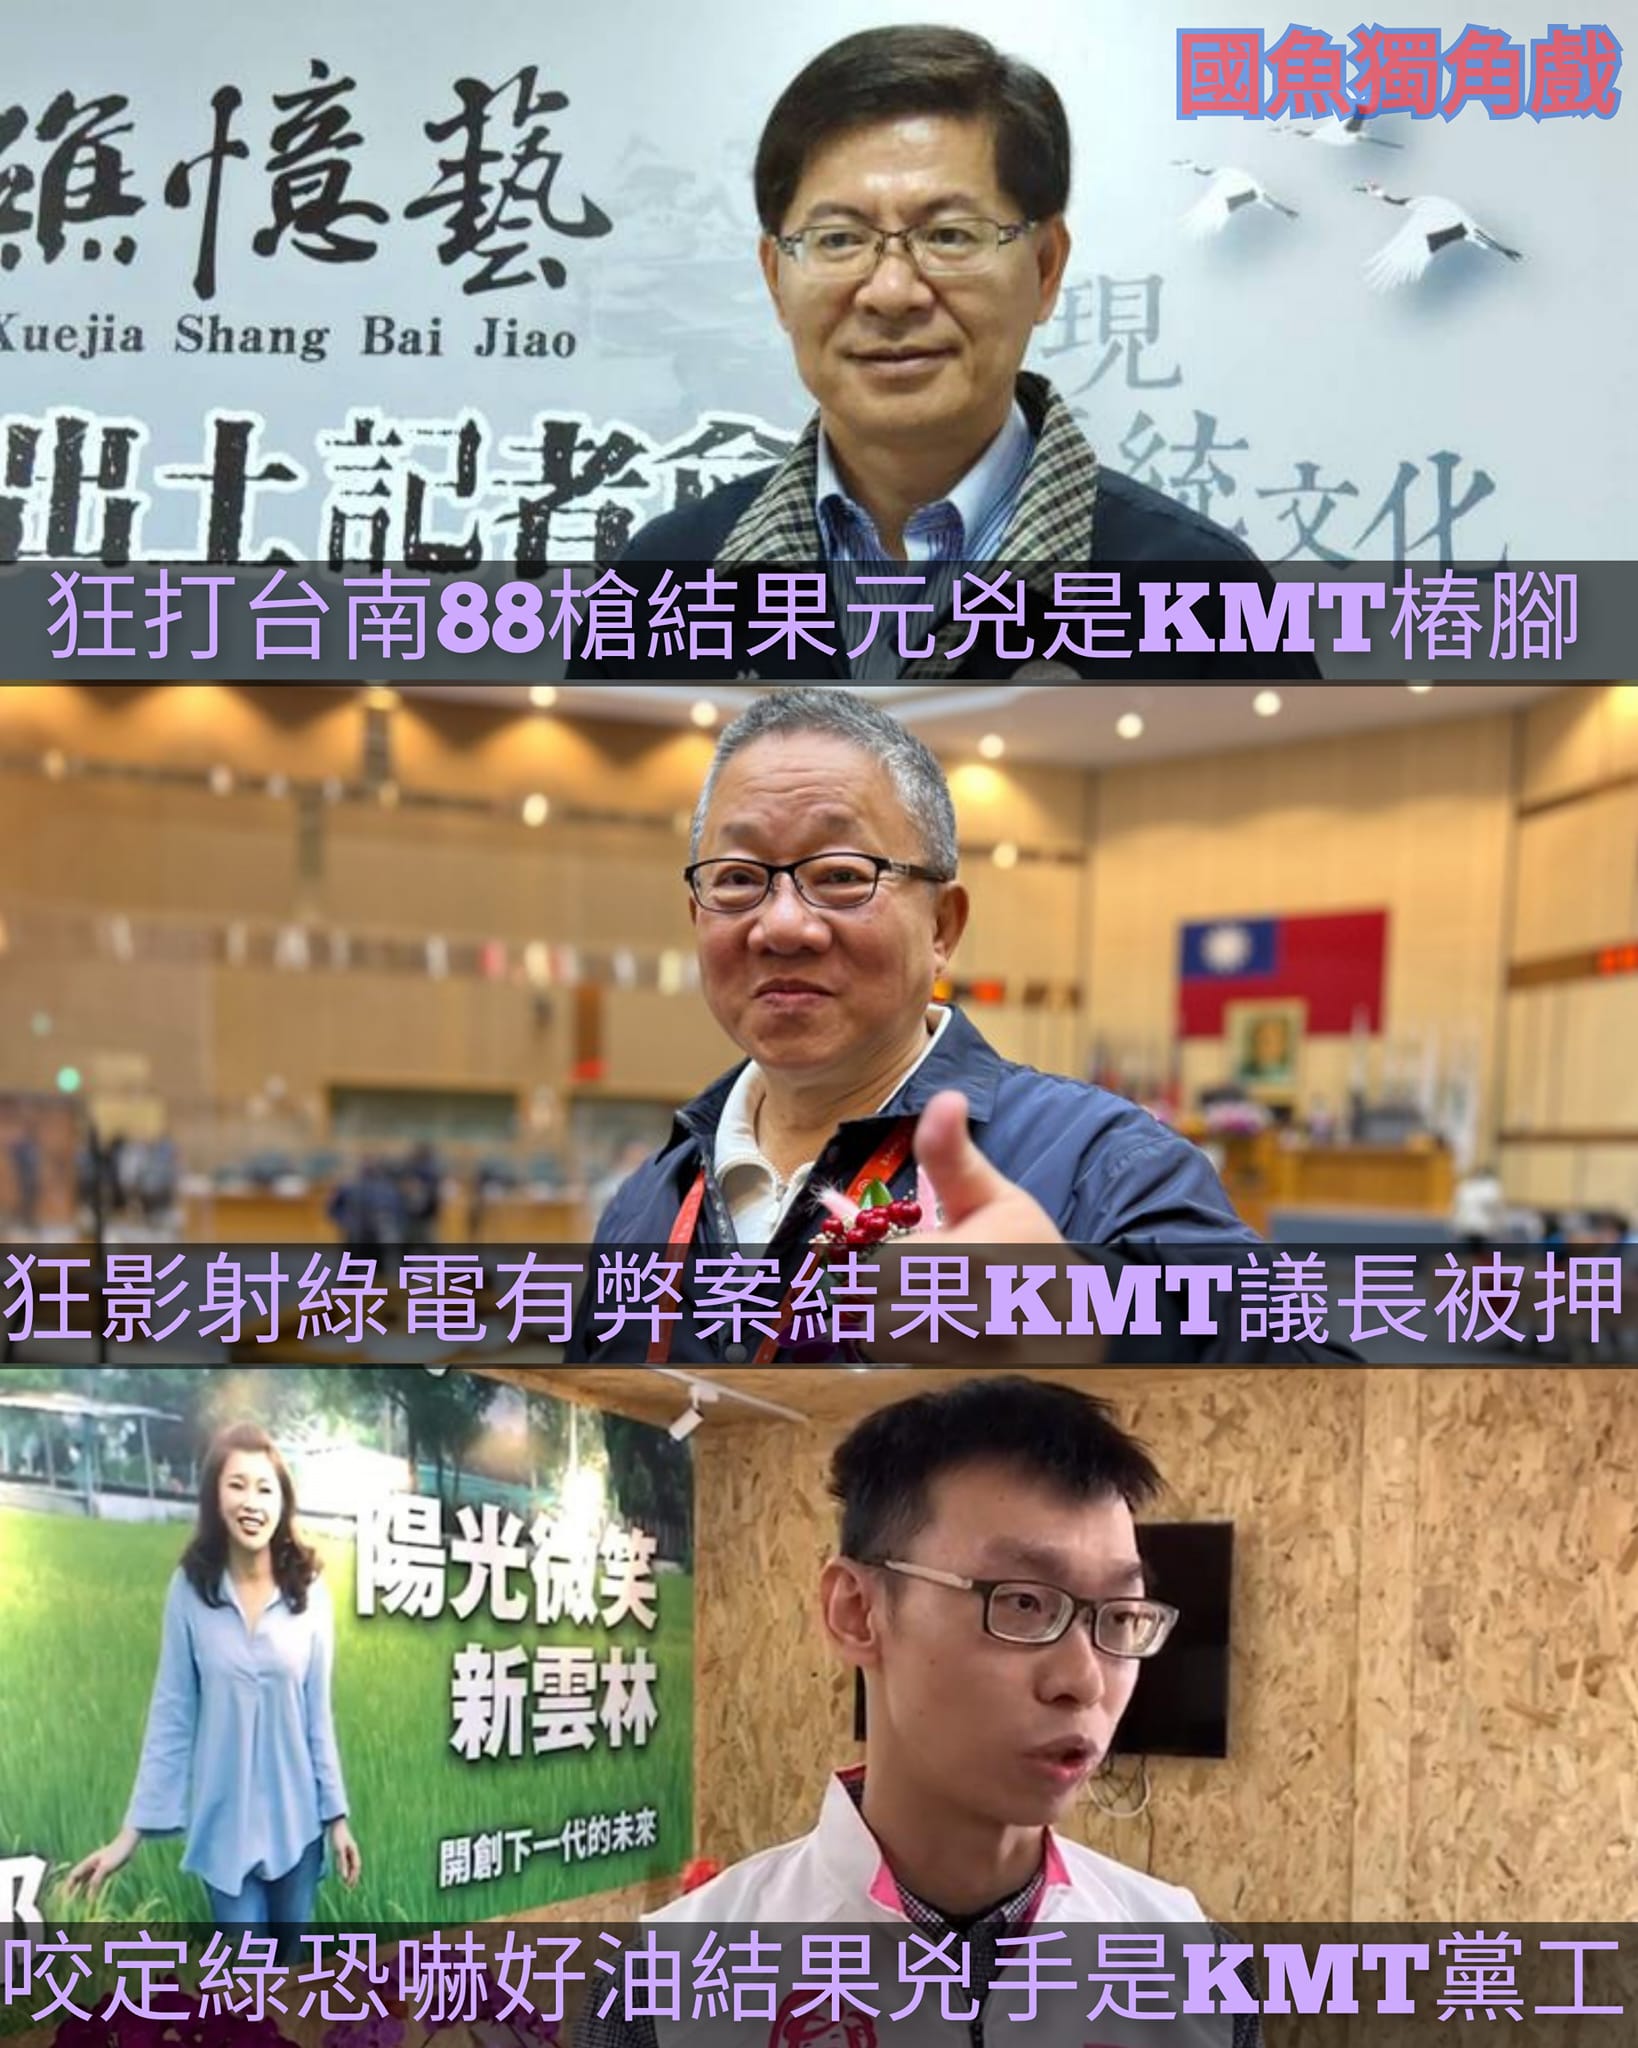 還在瞎挺KMT的知道羞恥是什麼嗎？